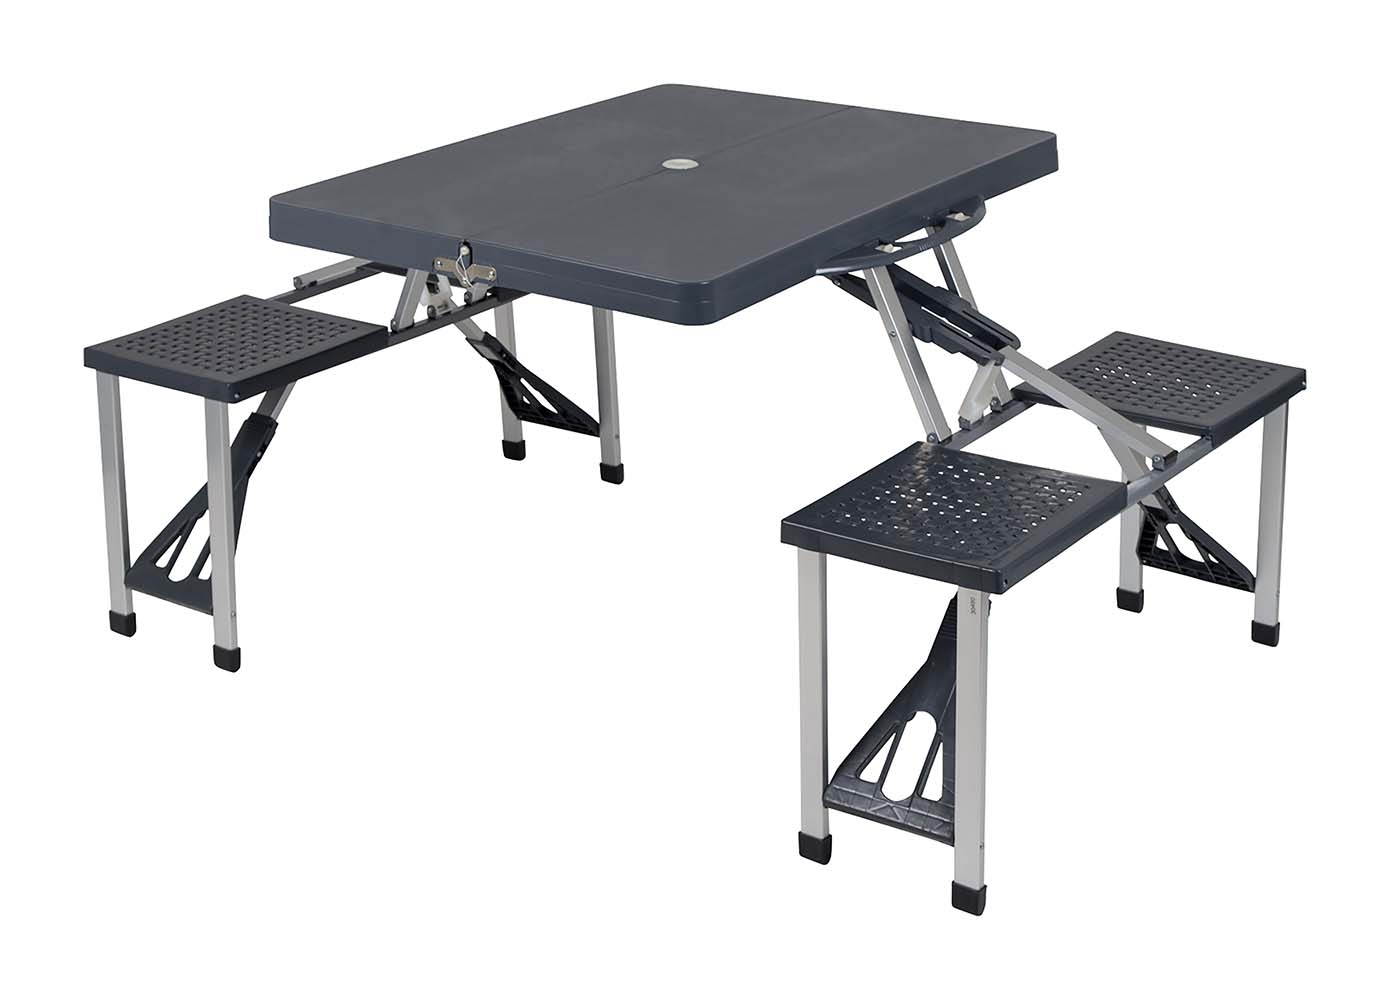 1404374 Una robusta mesa de picnic con 4 asientos. Tiene una estructura de acero liviano y una mesa de ABS. Esta mesa de picnic es sencilla y compacta de plegar (LxAnxAl: 35x86x11 cm).